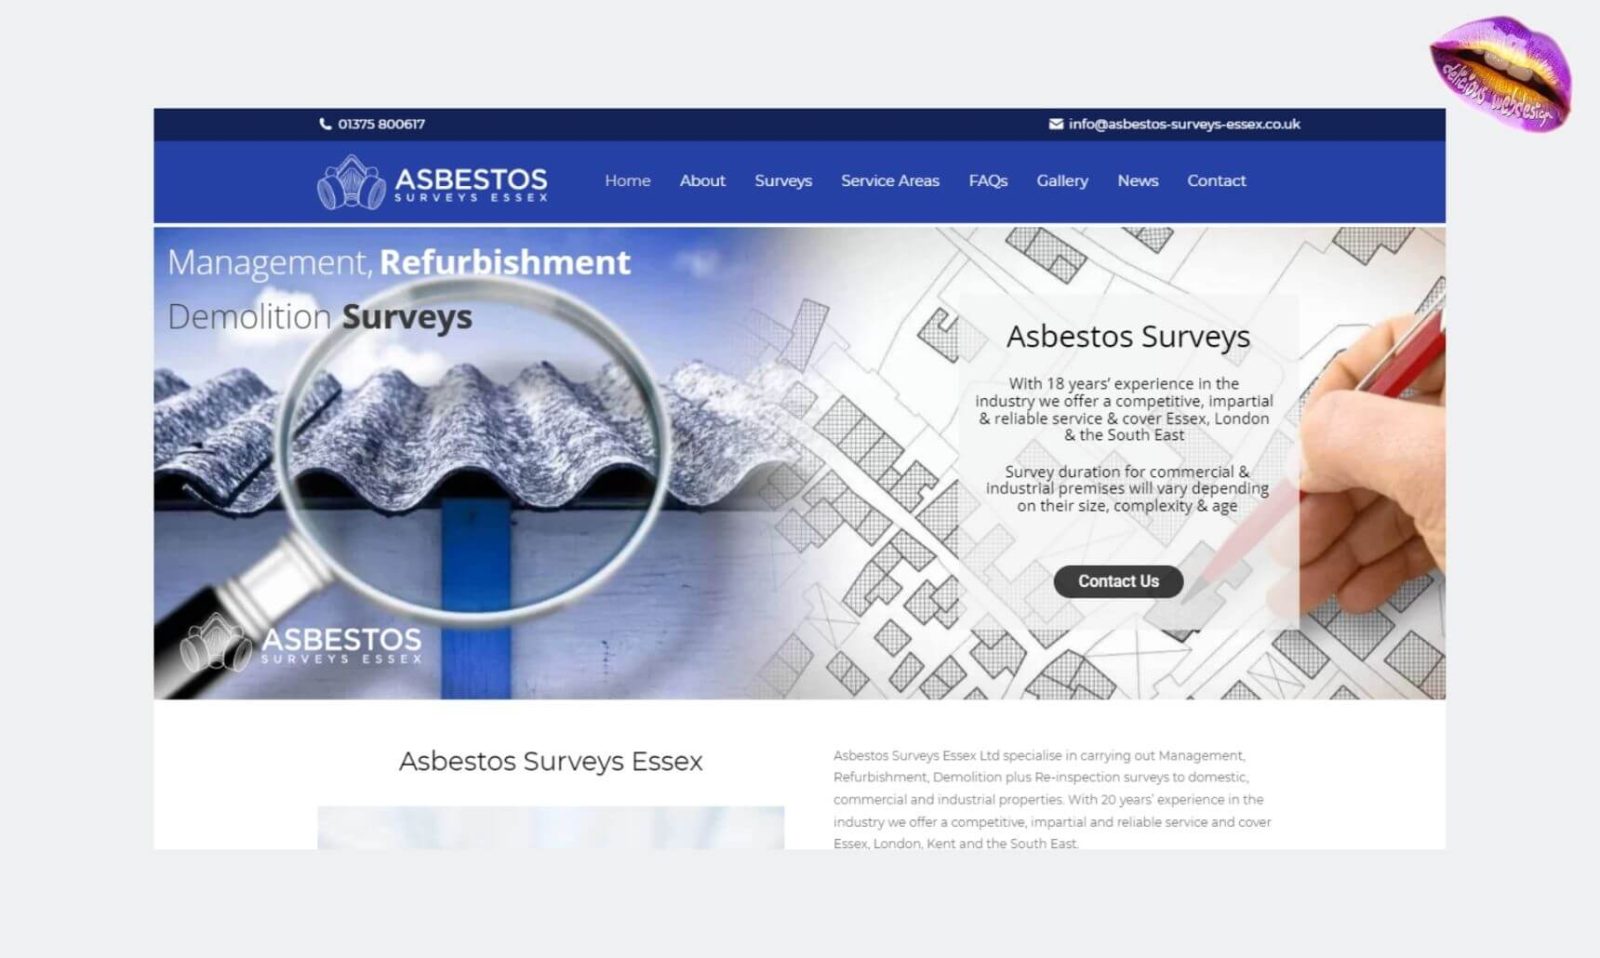 Asbestos Surveys Essex